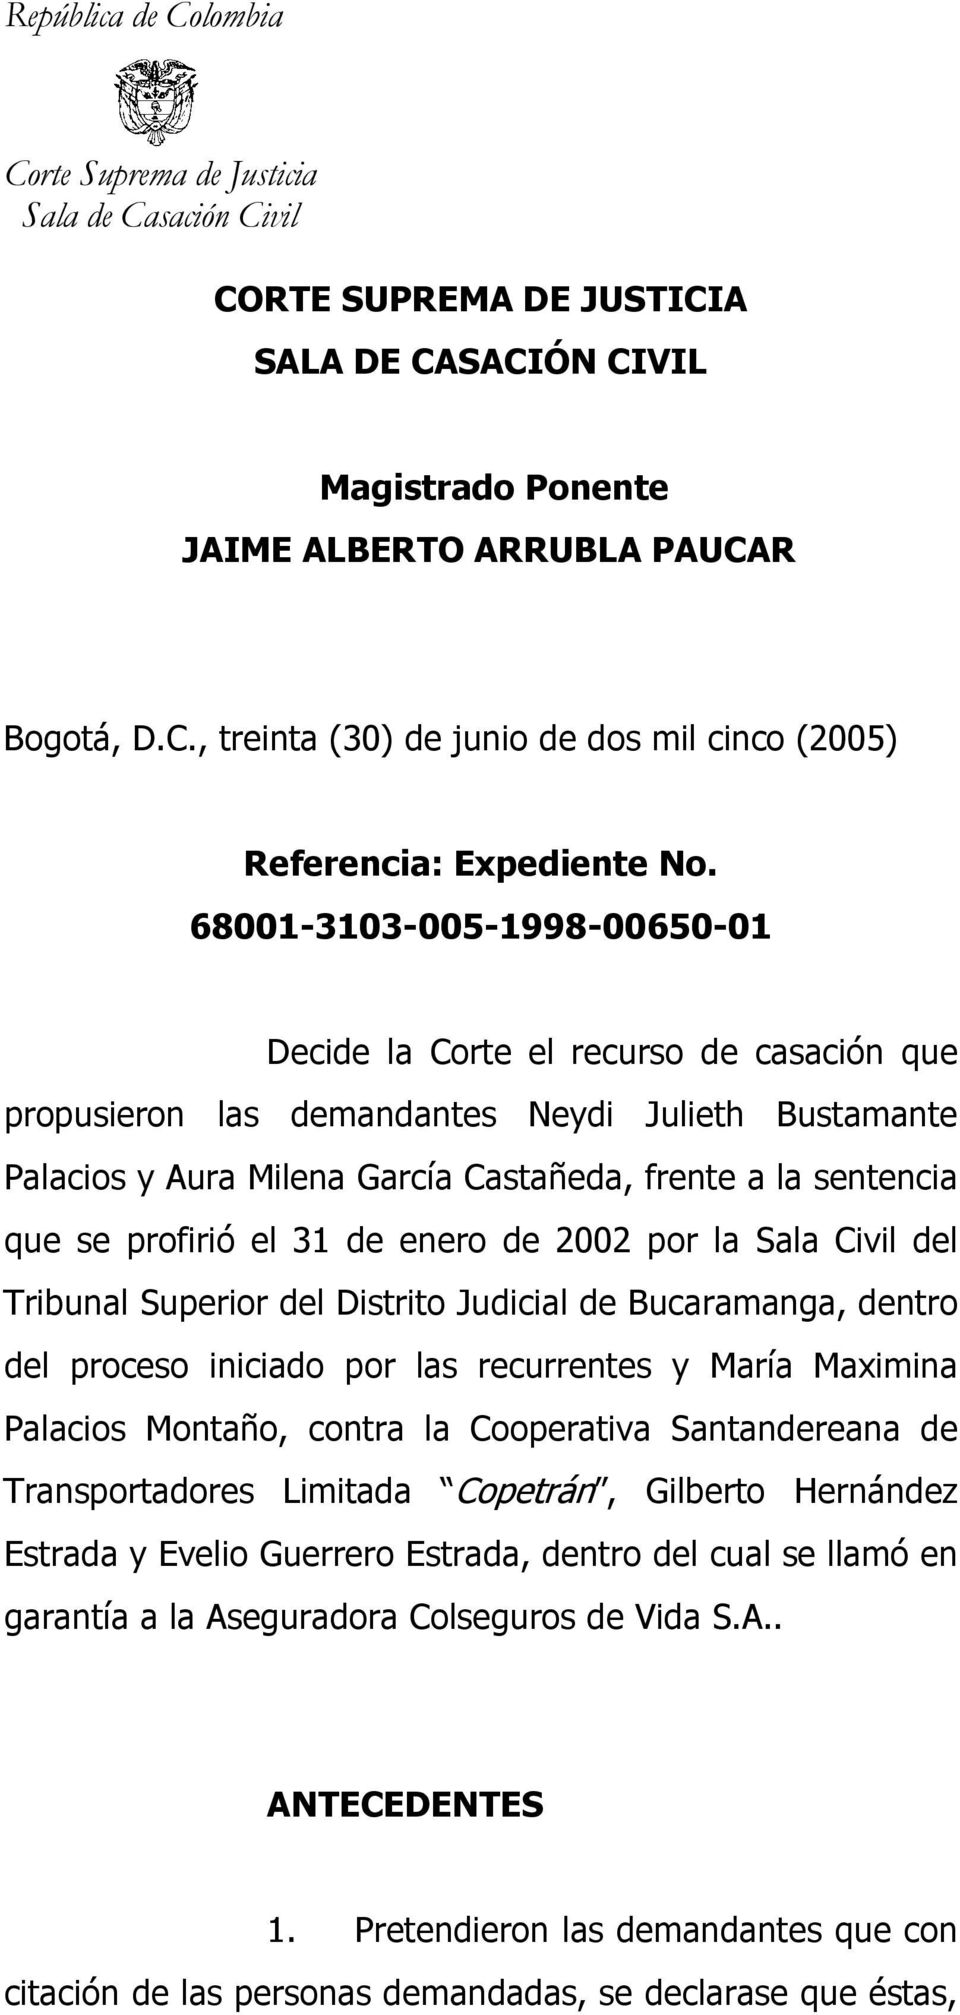 profirió el 31 de enero de 2002 por la Sala Civil del Tribunal Superior del Distrito Judicial de Bucaramanga, dentro del proceso iniciado por las recurrentes y María Maximina Palacios Montaño, contra